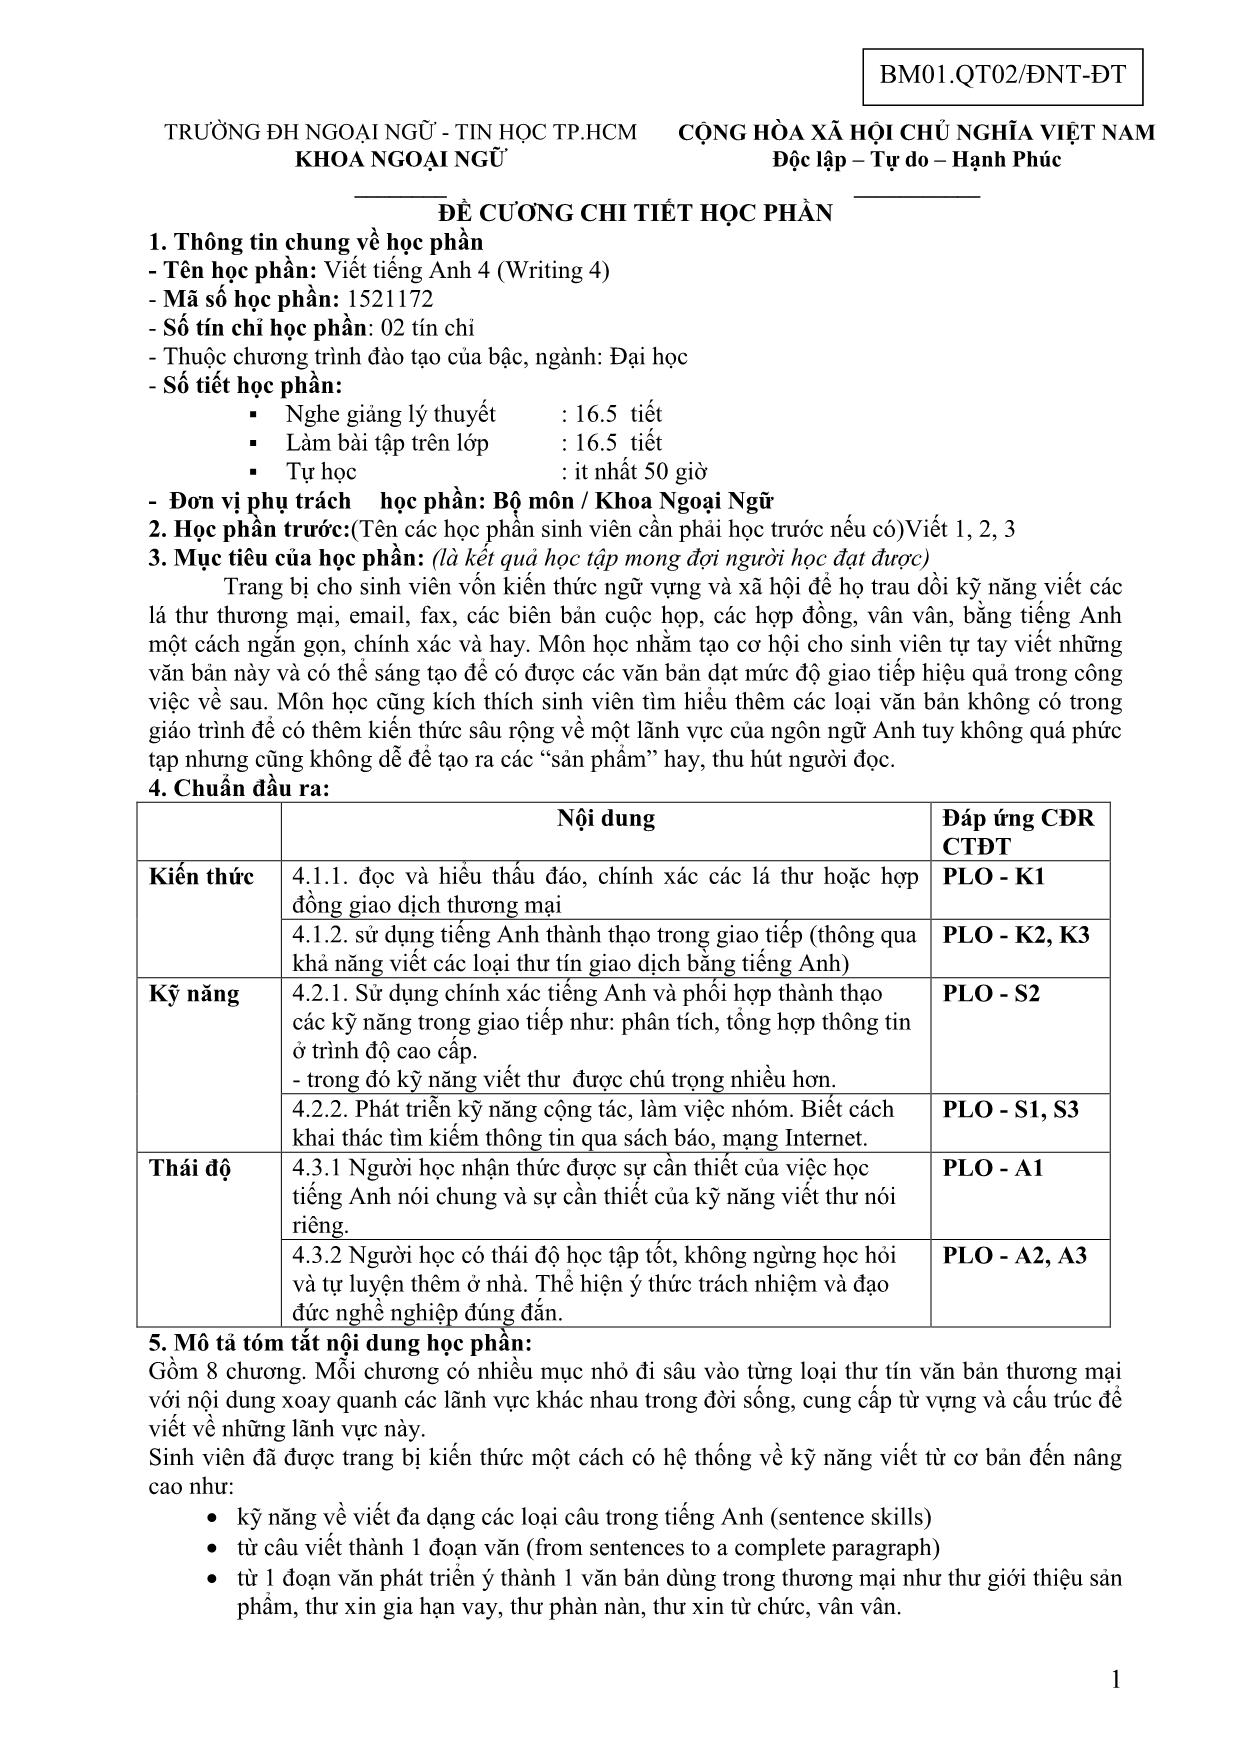 Đề cương chi tiết học phần Viết tiếng Anh 4 (Writing 4) trang 1